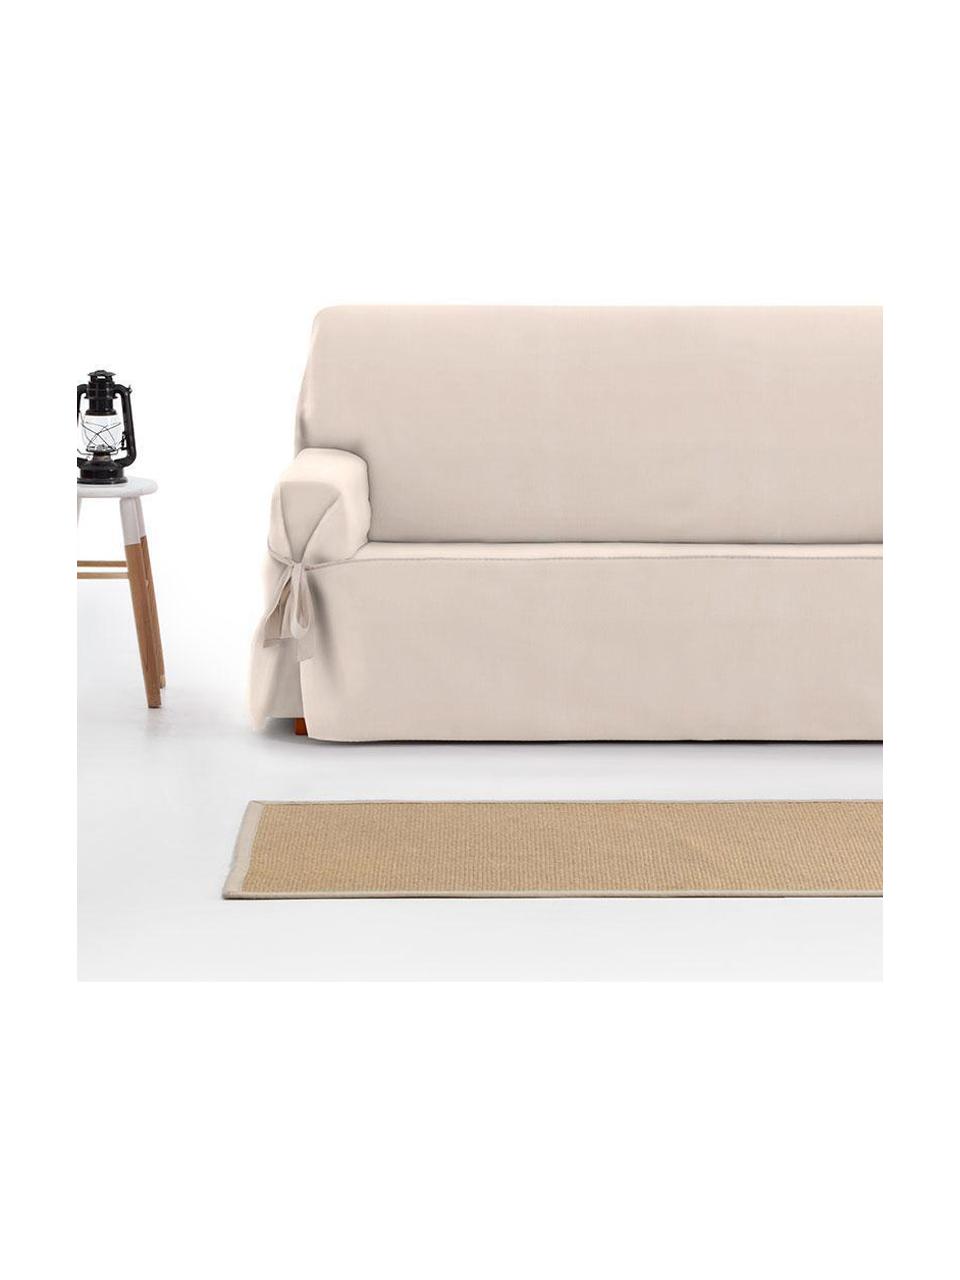 Pokrowiec na sofę Levante, 65% bawełna, 35% poliester, Beżowy, S 160 x W 110 cm